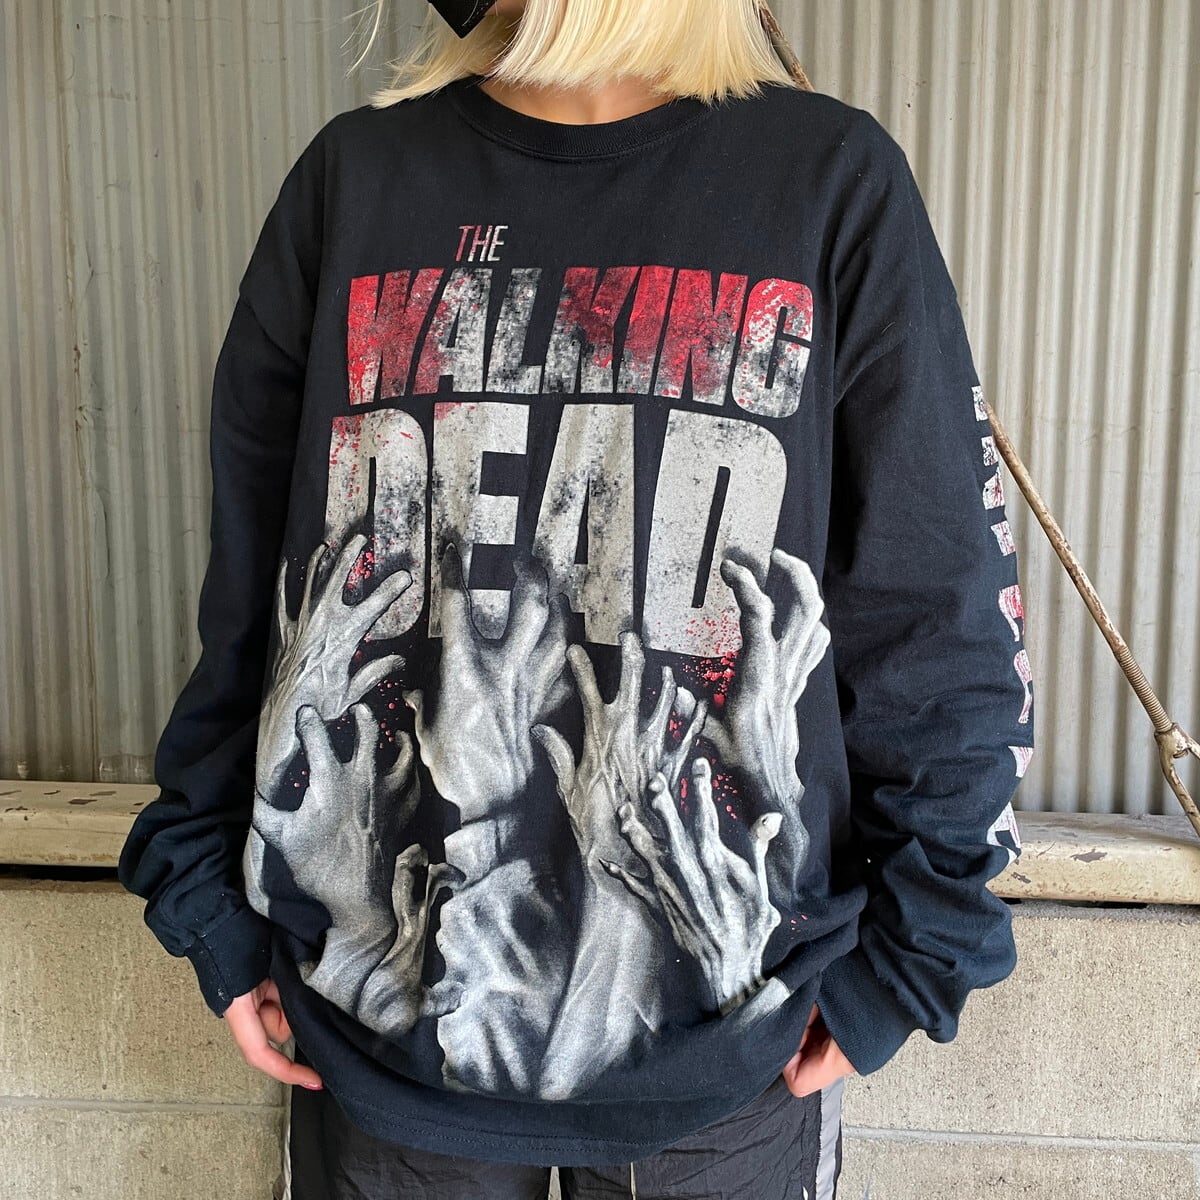 THE WALKING DEAD Tシャツ